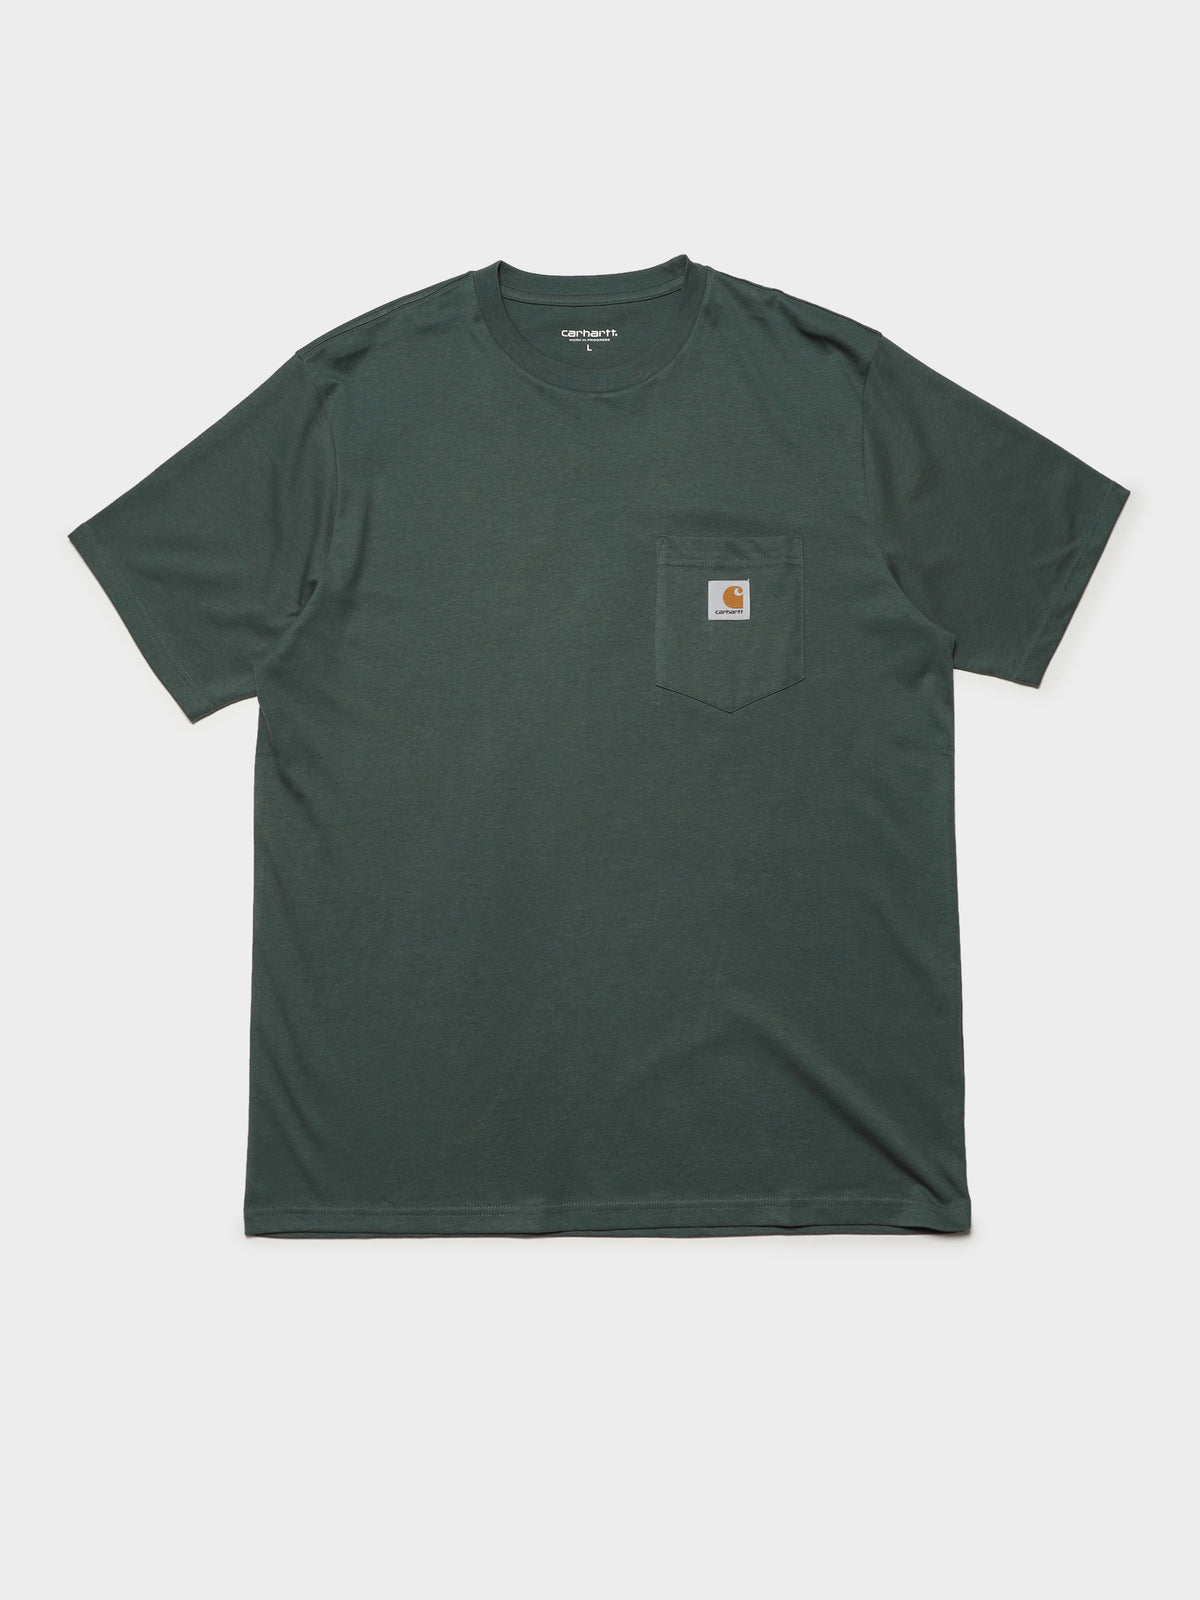 Pocket Short Sleeve T-Shirt in Light Green